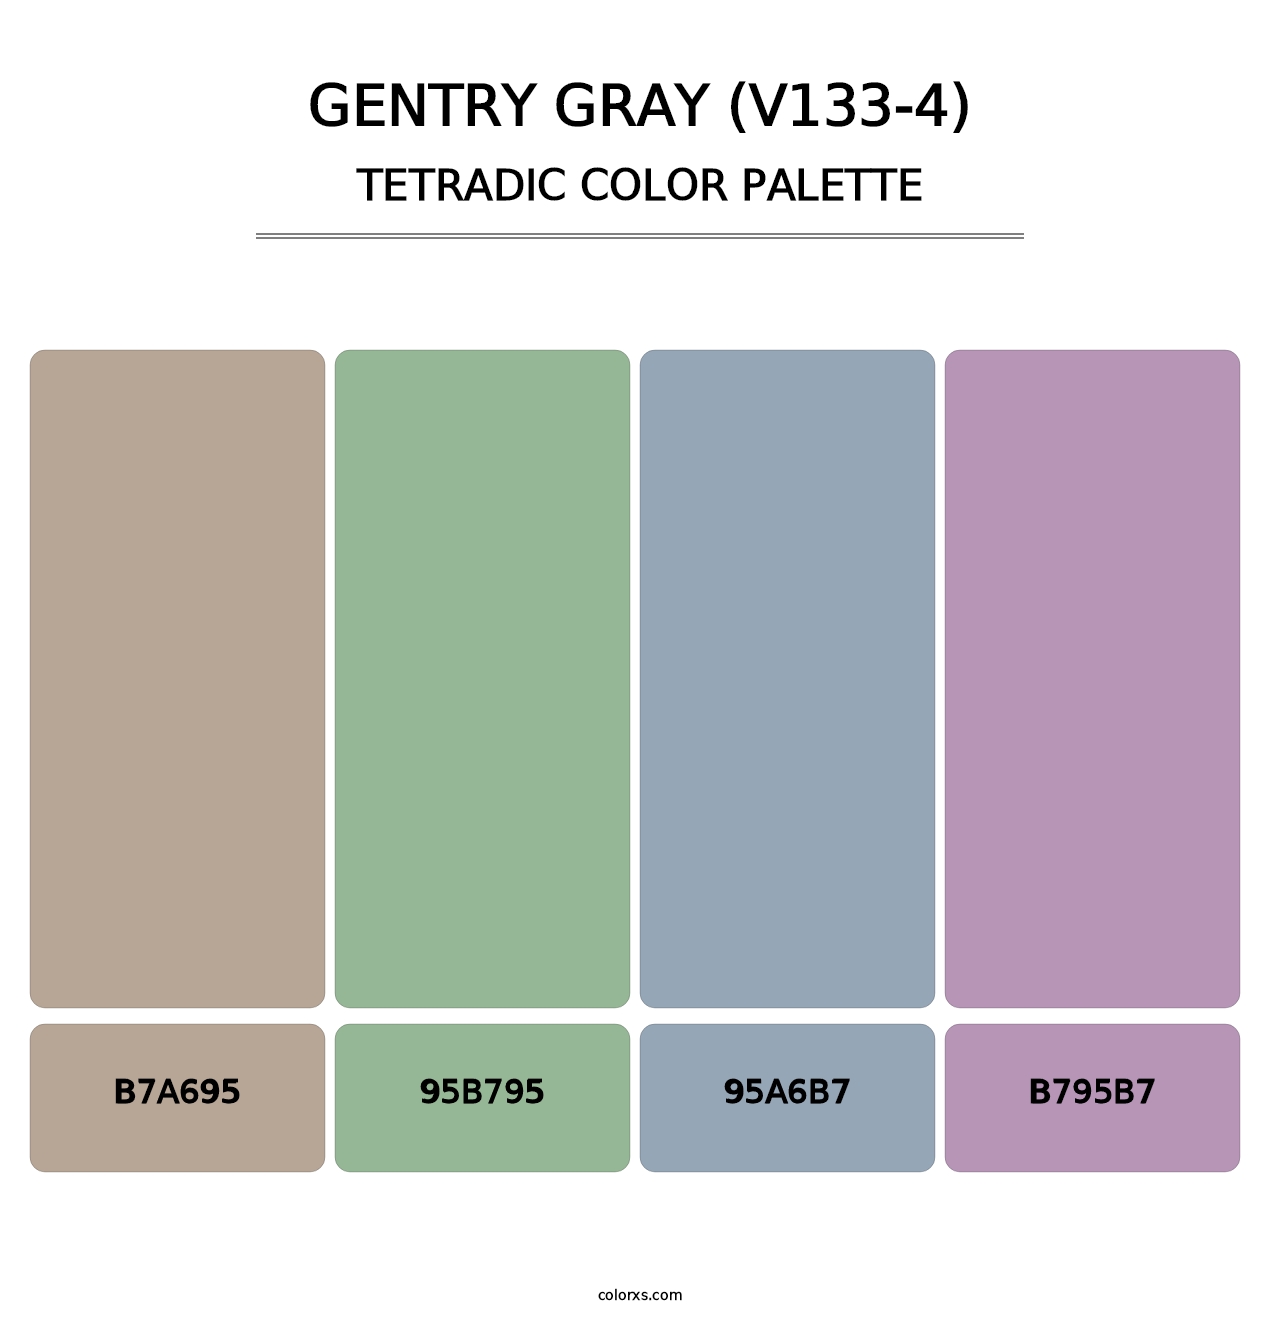 Gentry Gray (V133-4) - Tetradic Color Palette